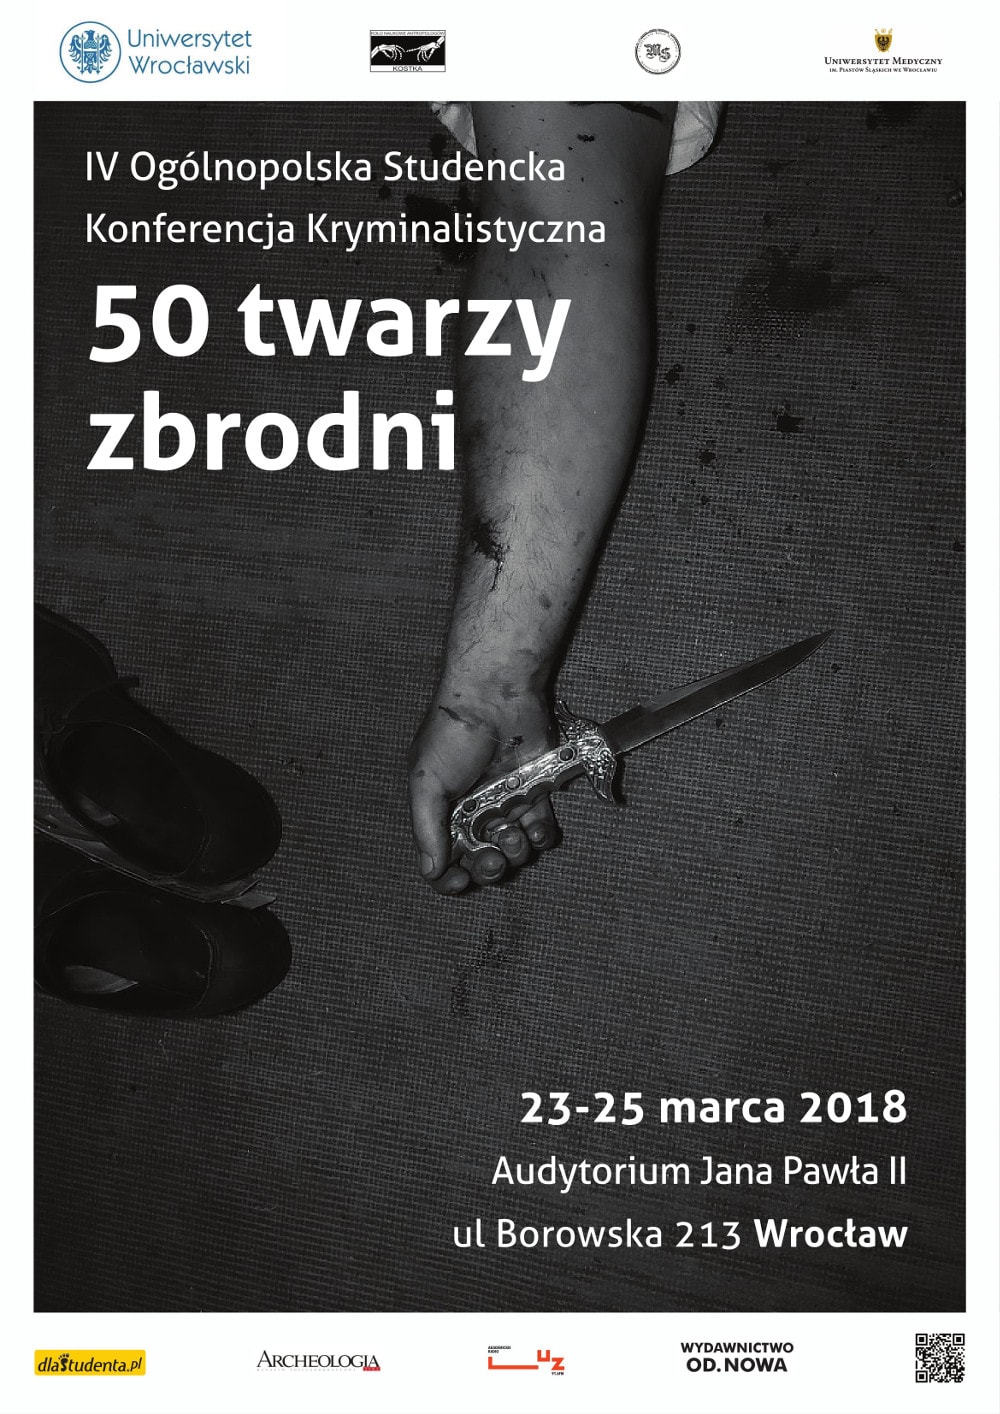 Konferencja naukowa odbędzie się w dniach 23-25 marca we Wrocławiu.